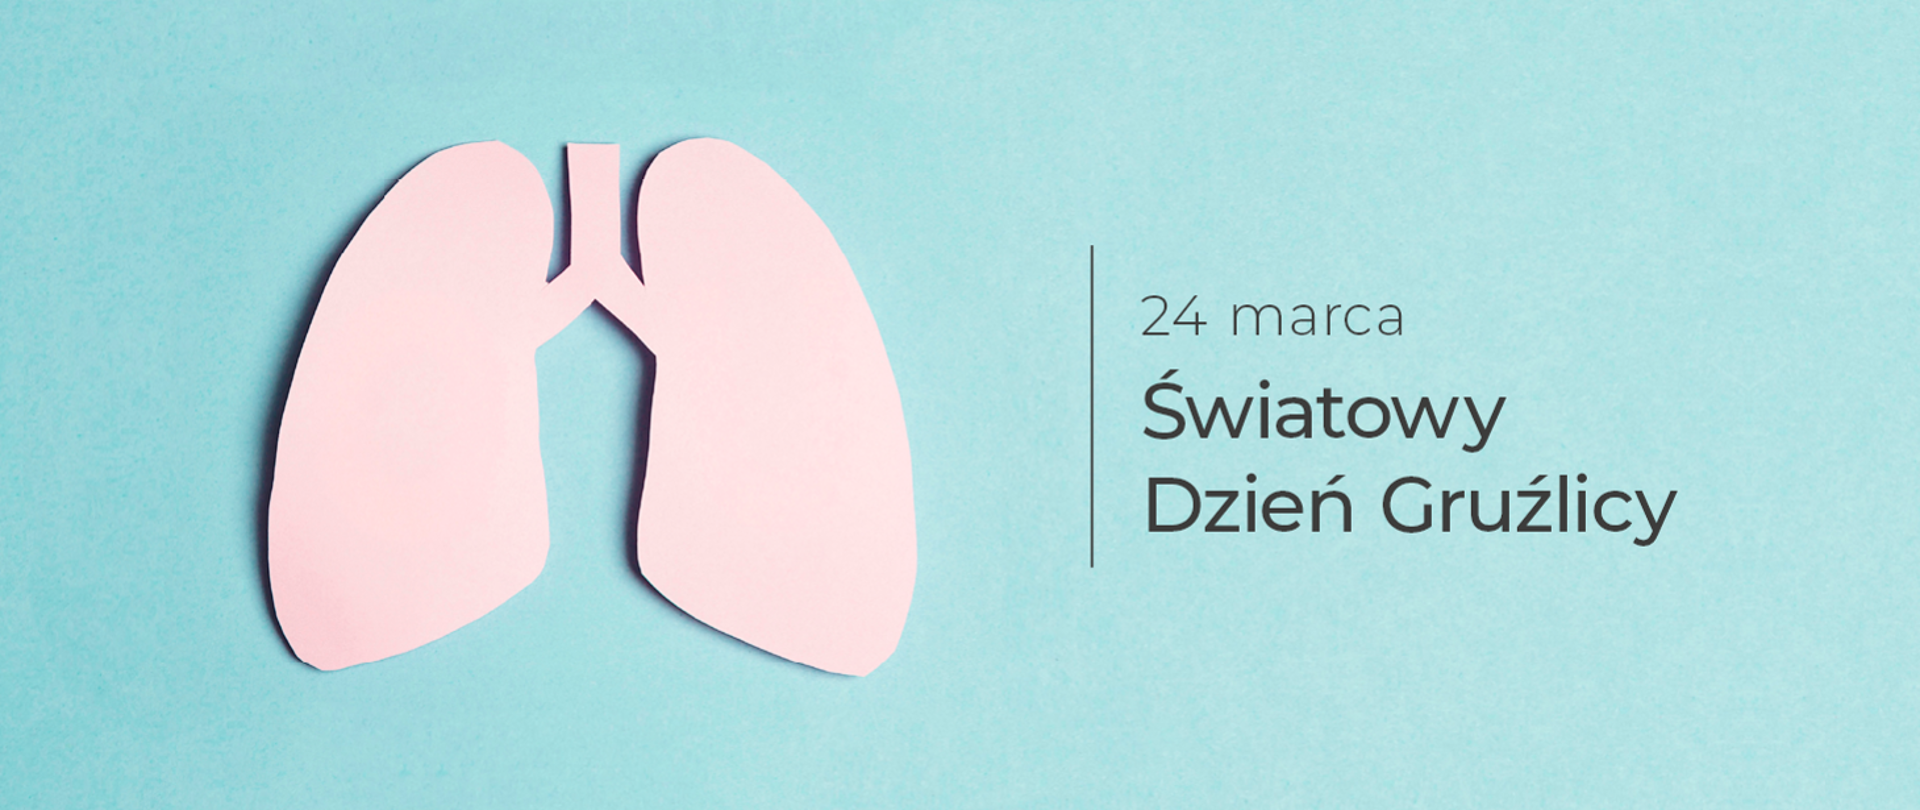 Światowy dzień gruźlicy 24 marca